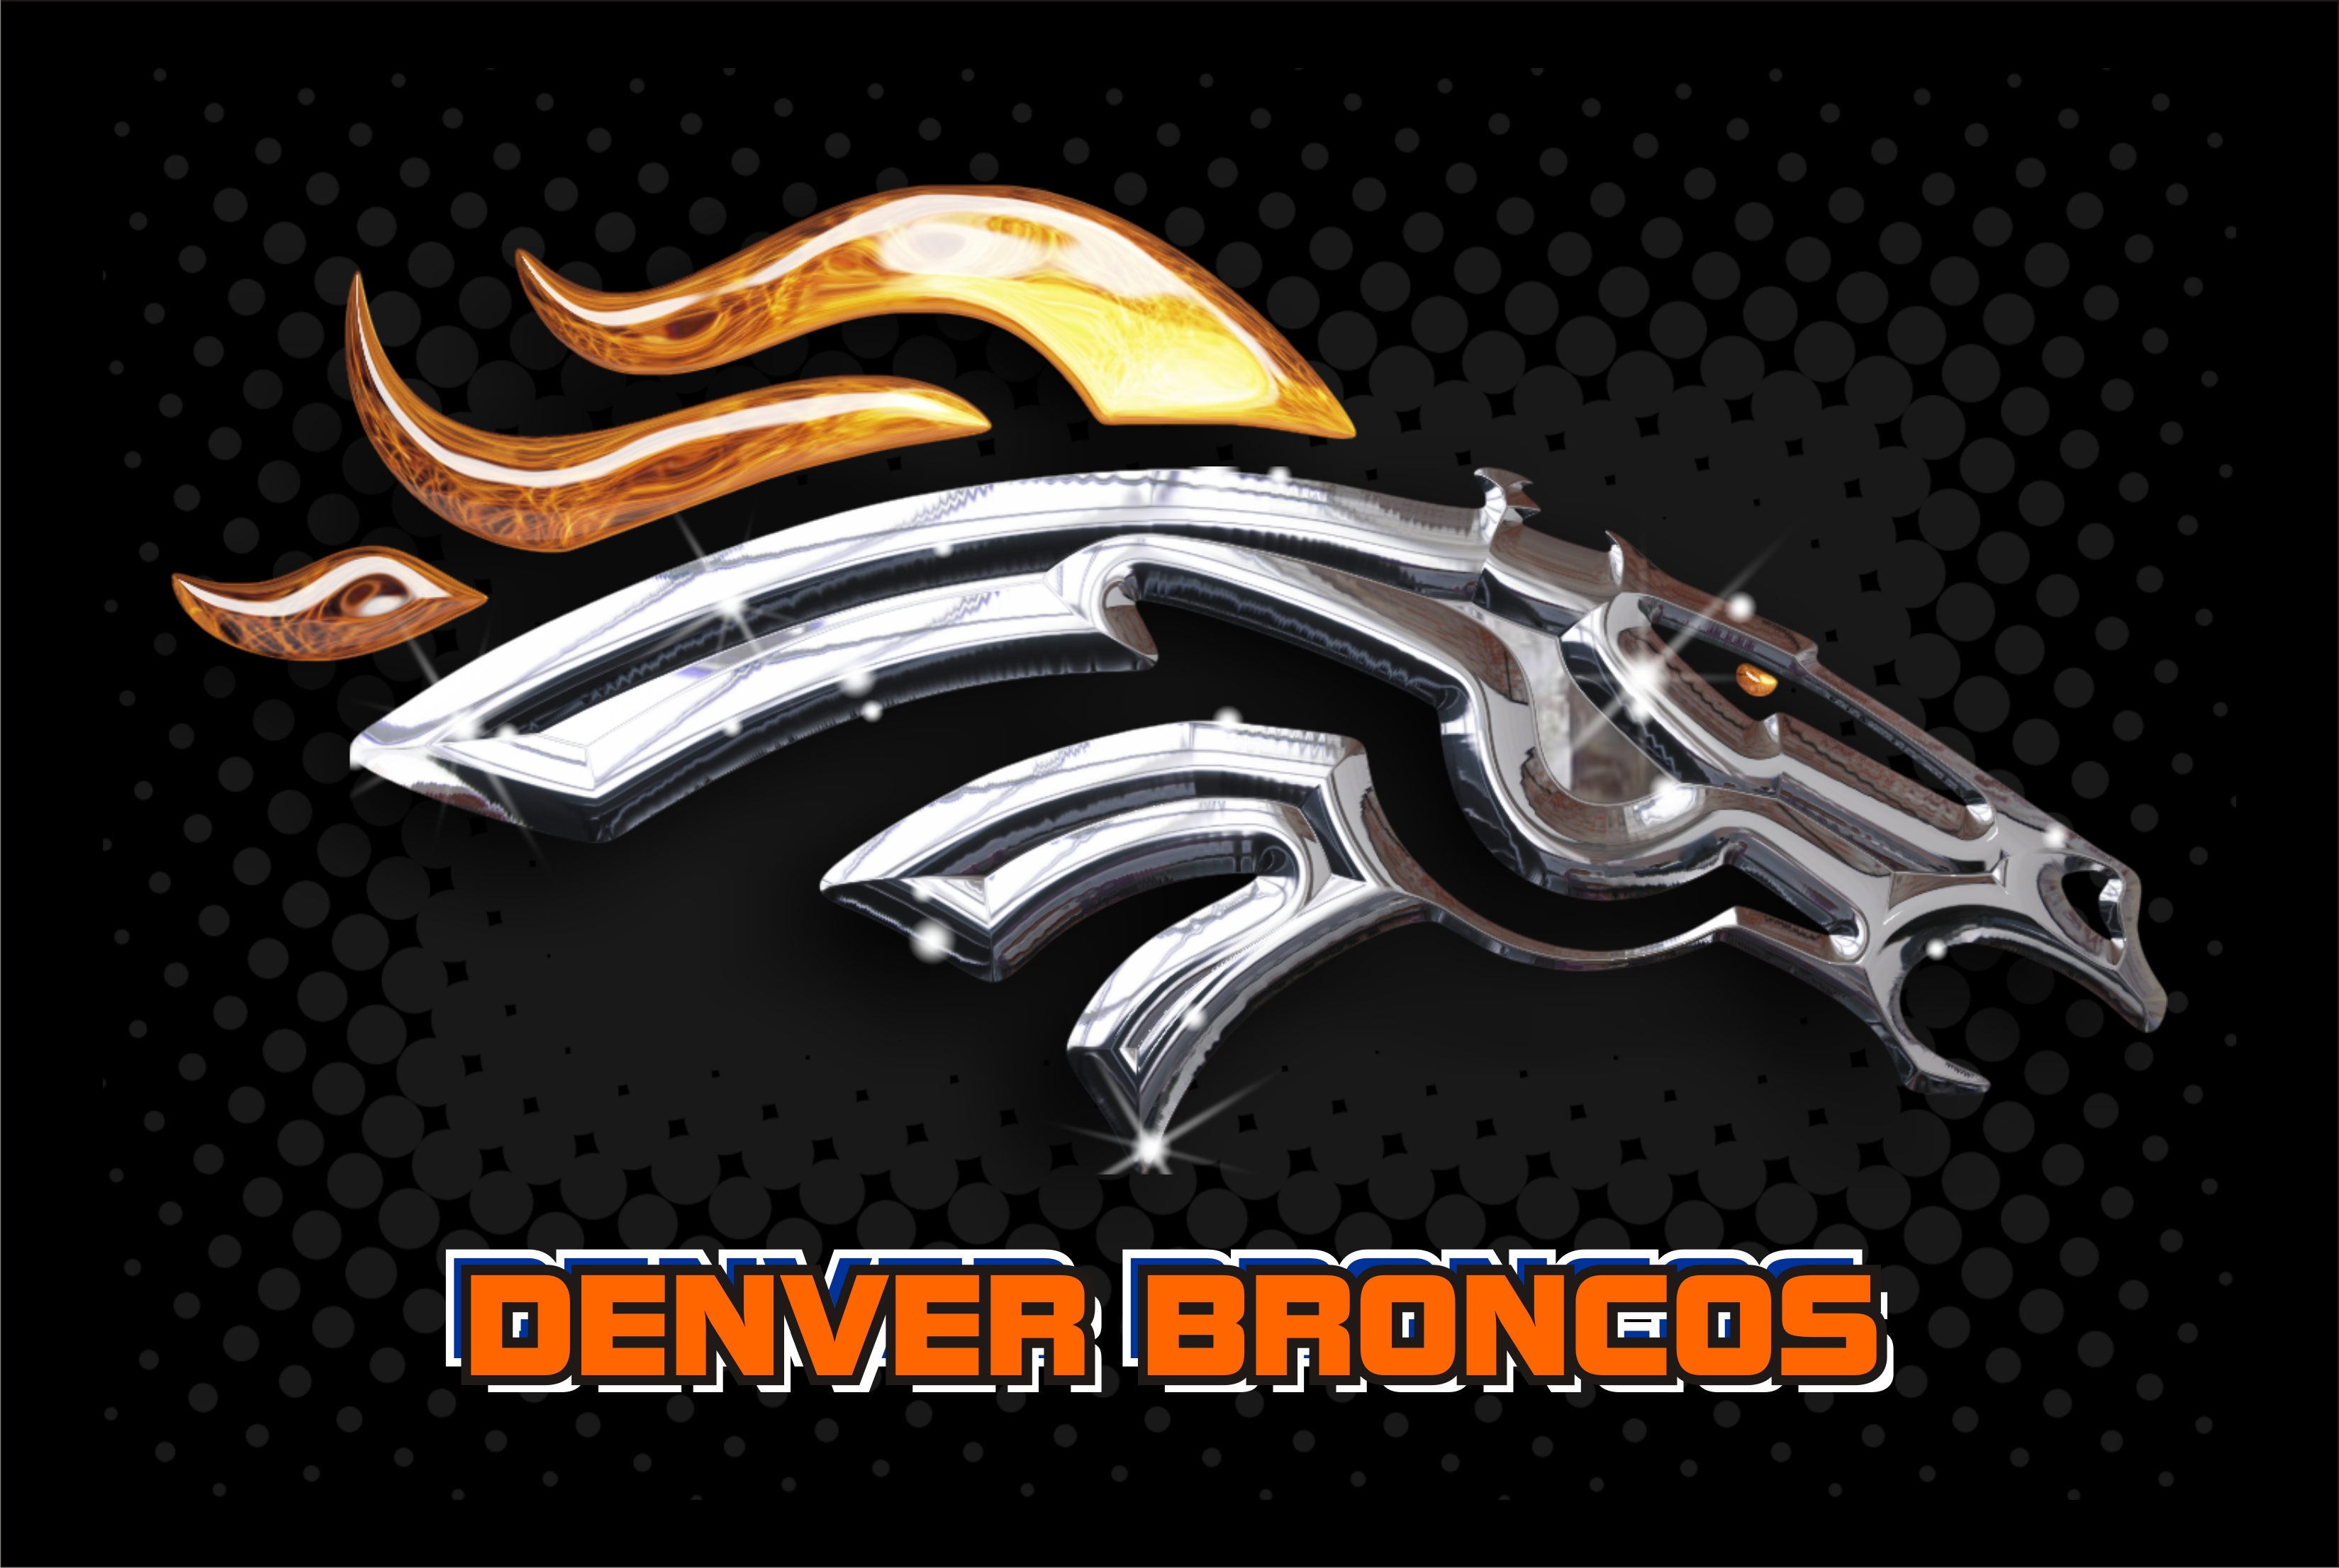 Denver Broncos Logo Wallpaper images